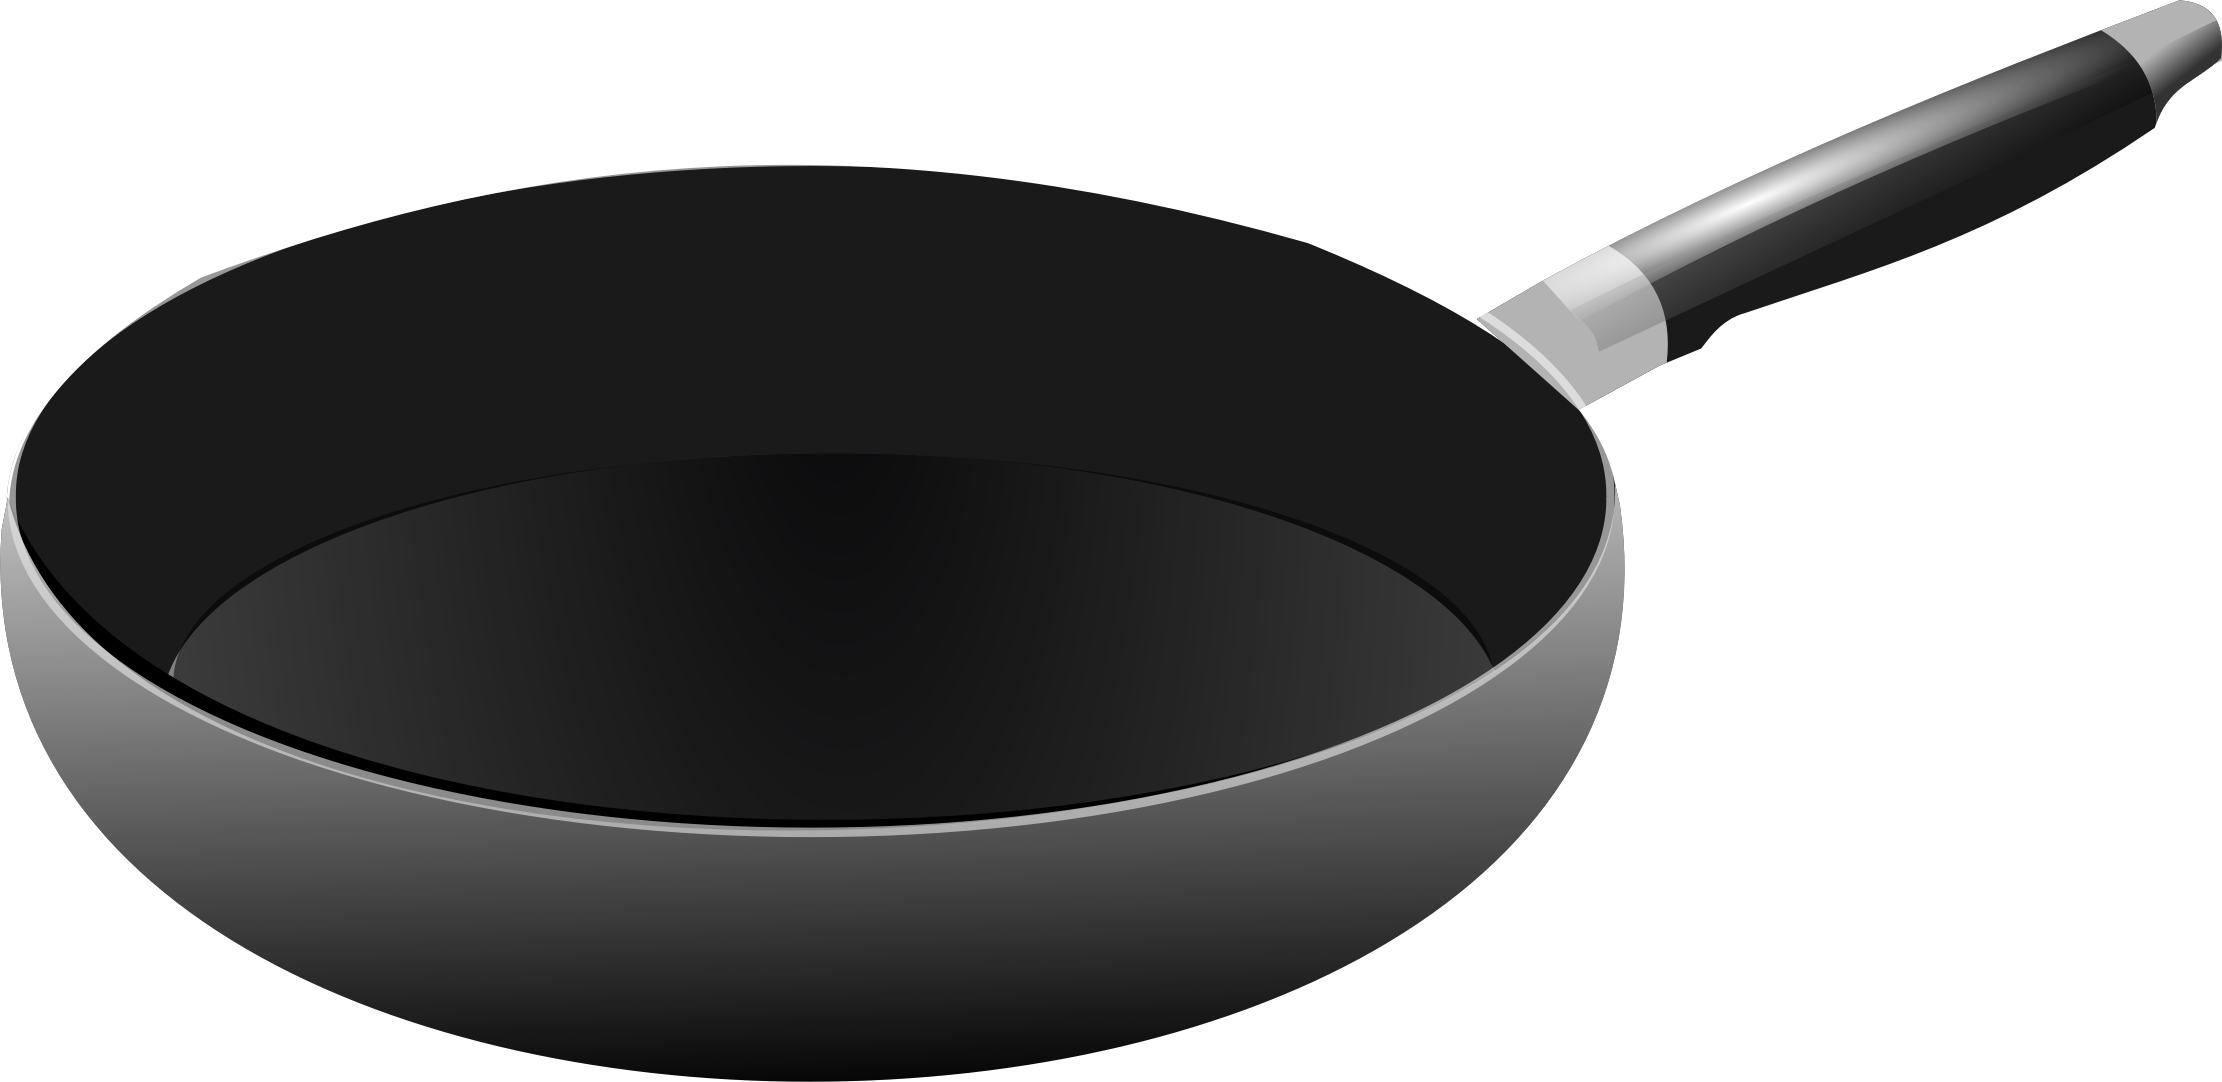 Cooking Pan Transparent